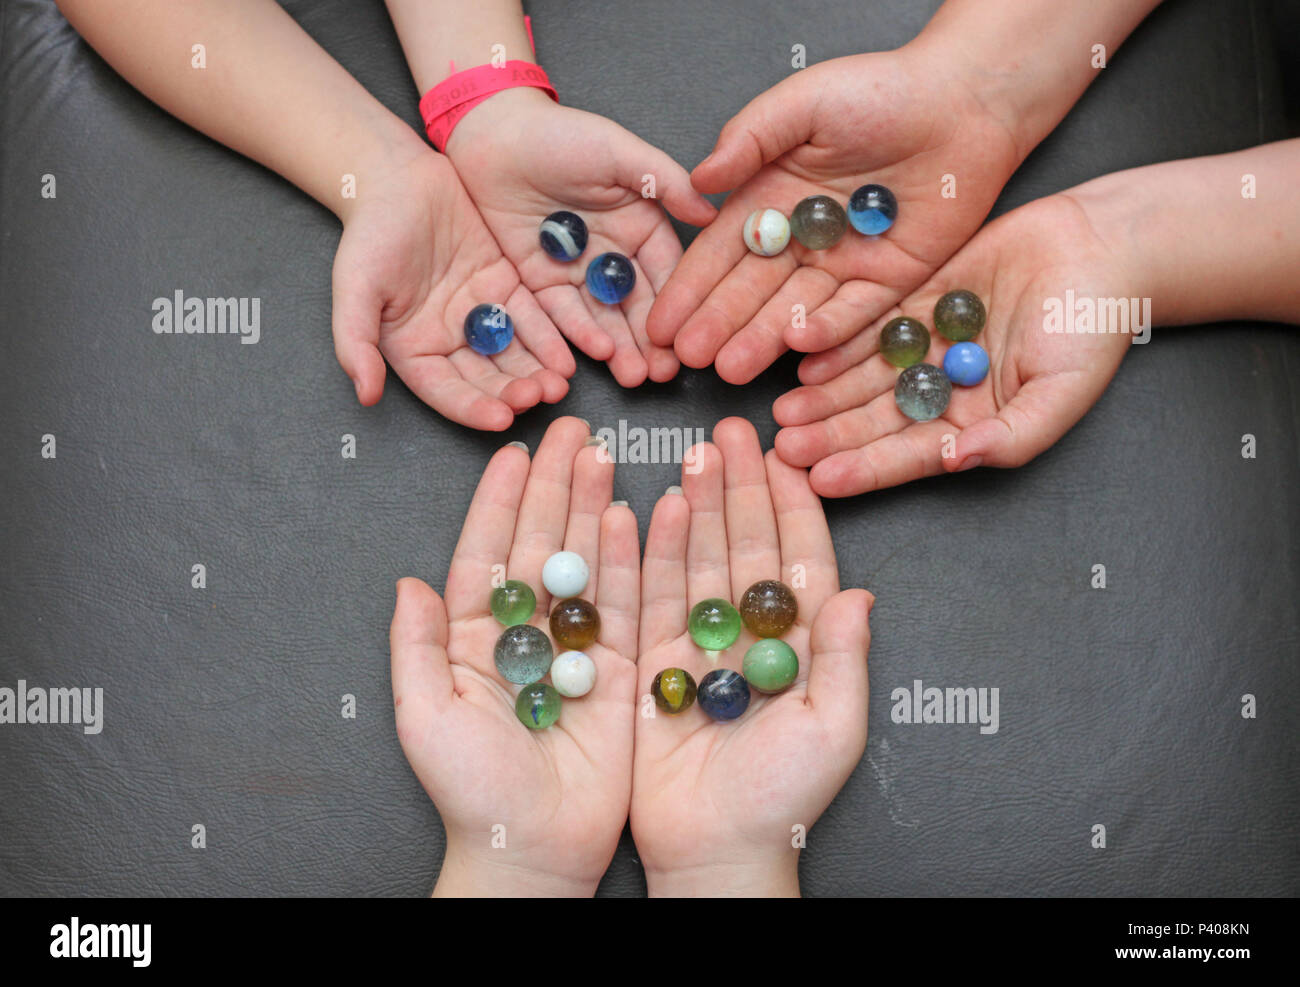 Mãos de crianças contendo bolinhas de gude perfeitamente contáveis. Stock Photo